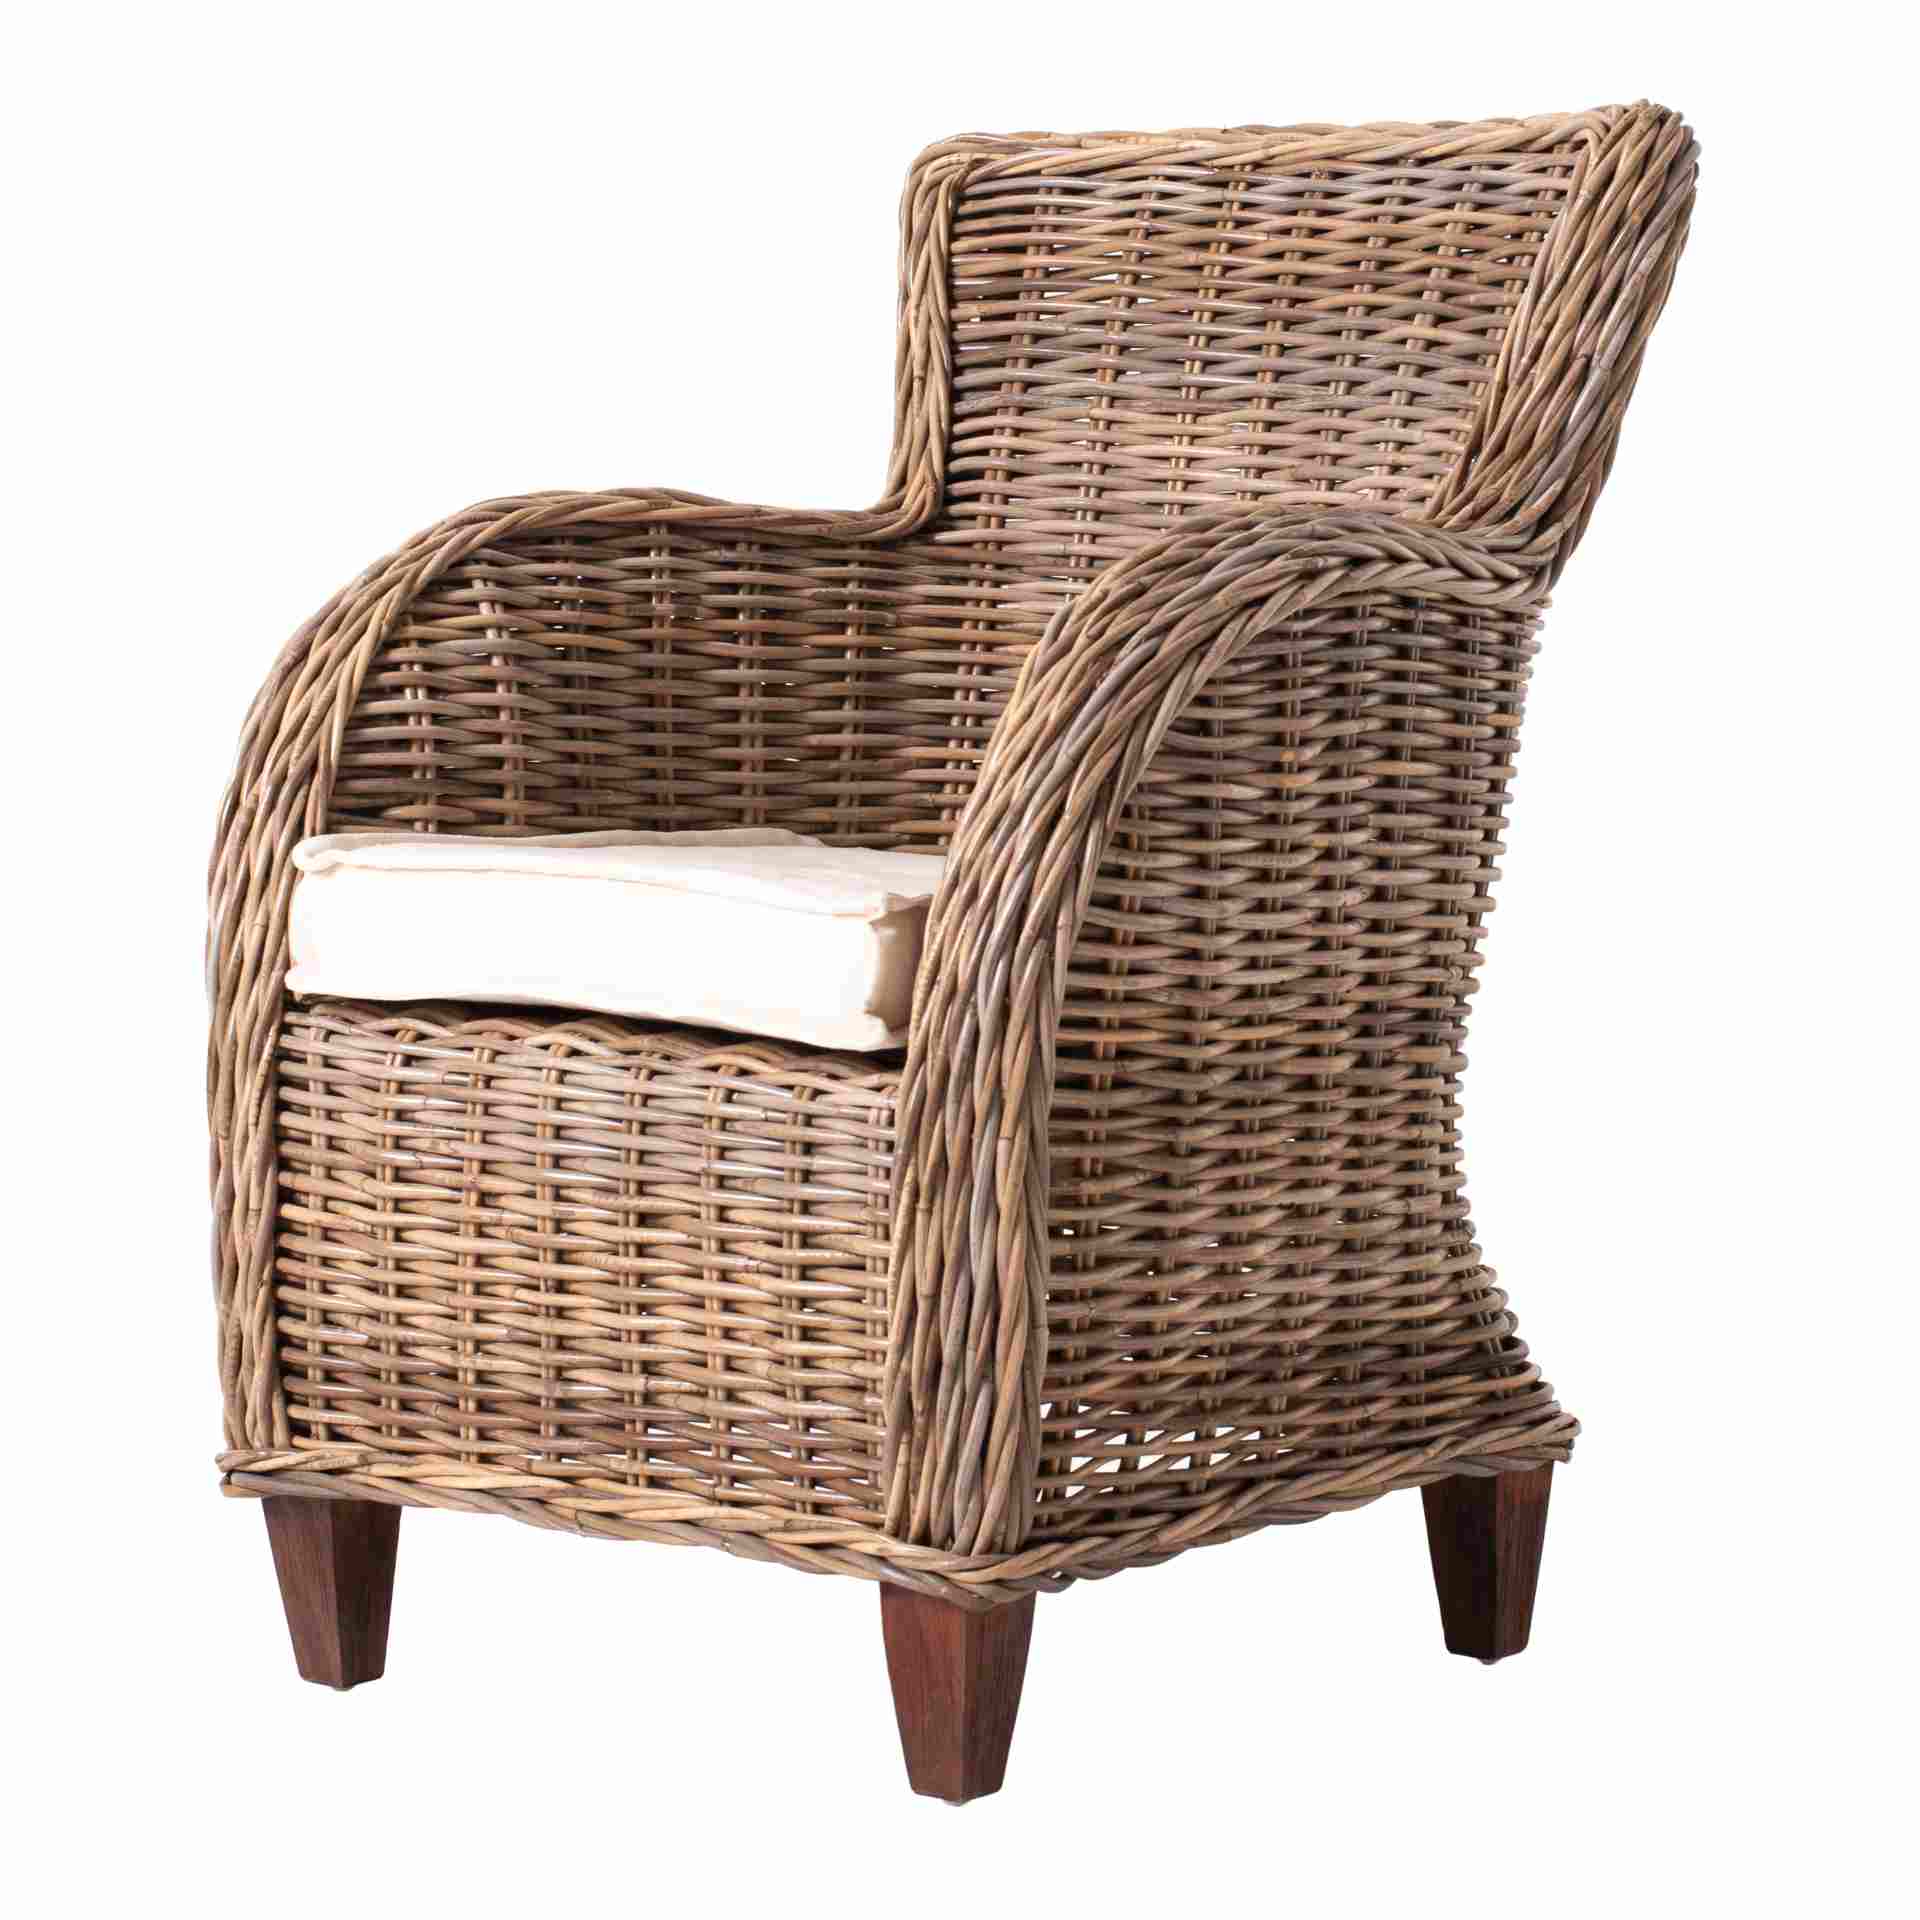 Der Armlehnstuhl Baron überzeugt mit seinem Landhaus Stil. Gefertigt wurde er aus Kabu Rattan, welches einen braunen Farbton besitzt. Der Stuhl verfügt über eine Armlehne und ist im 2er-Set erhältlich. Die Sitzhöhe beträgt beträgt 40 cm.